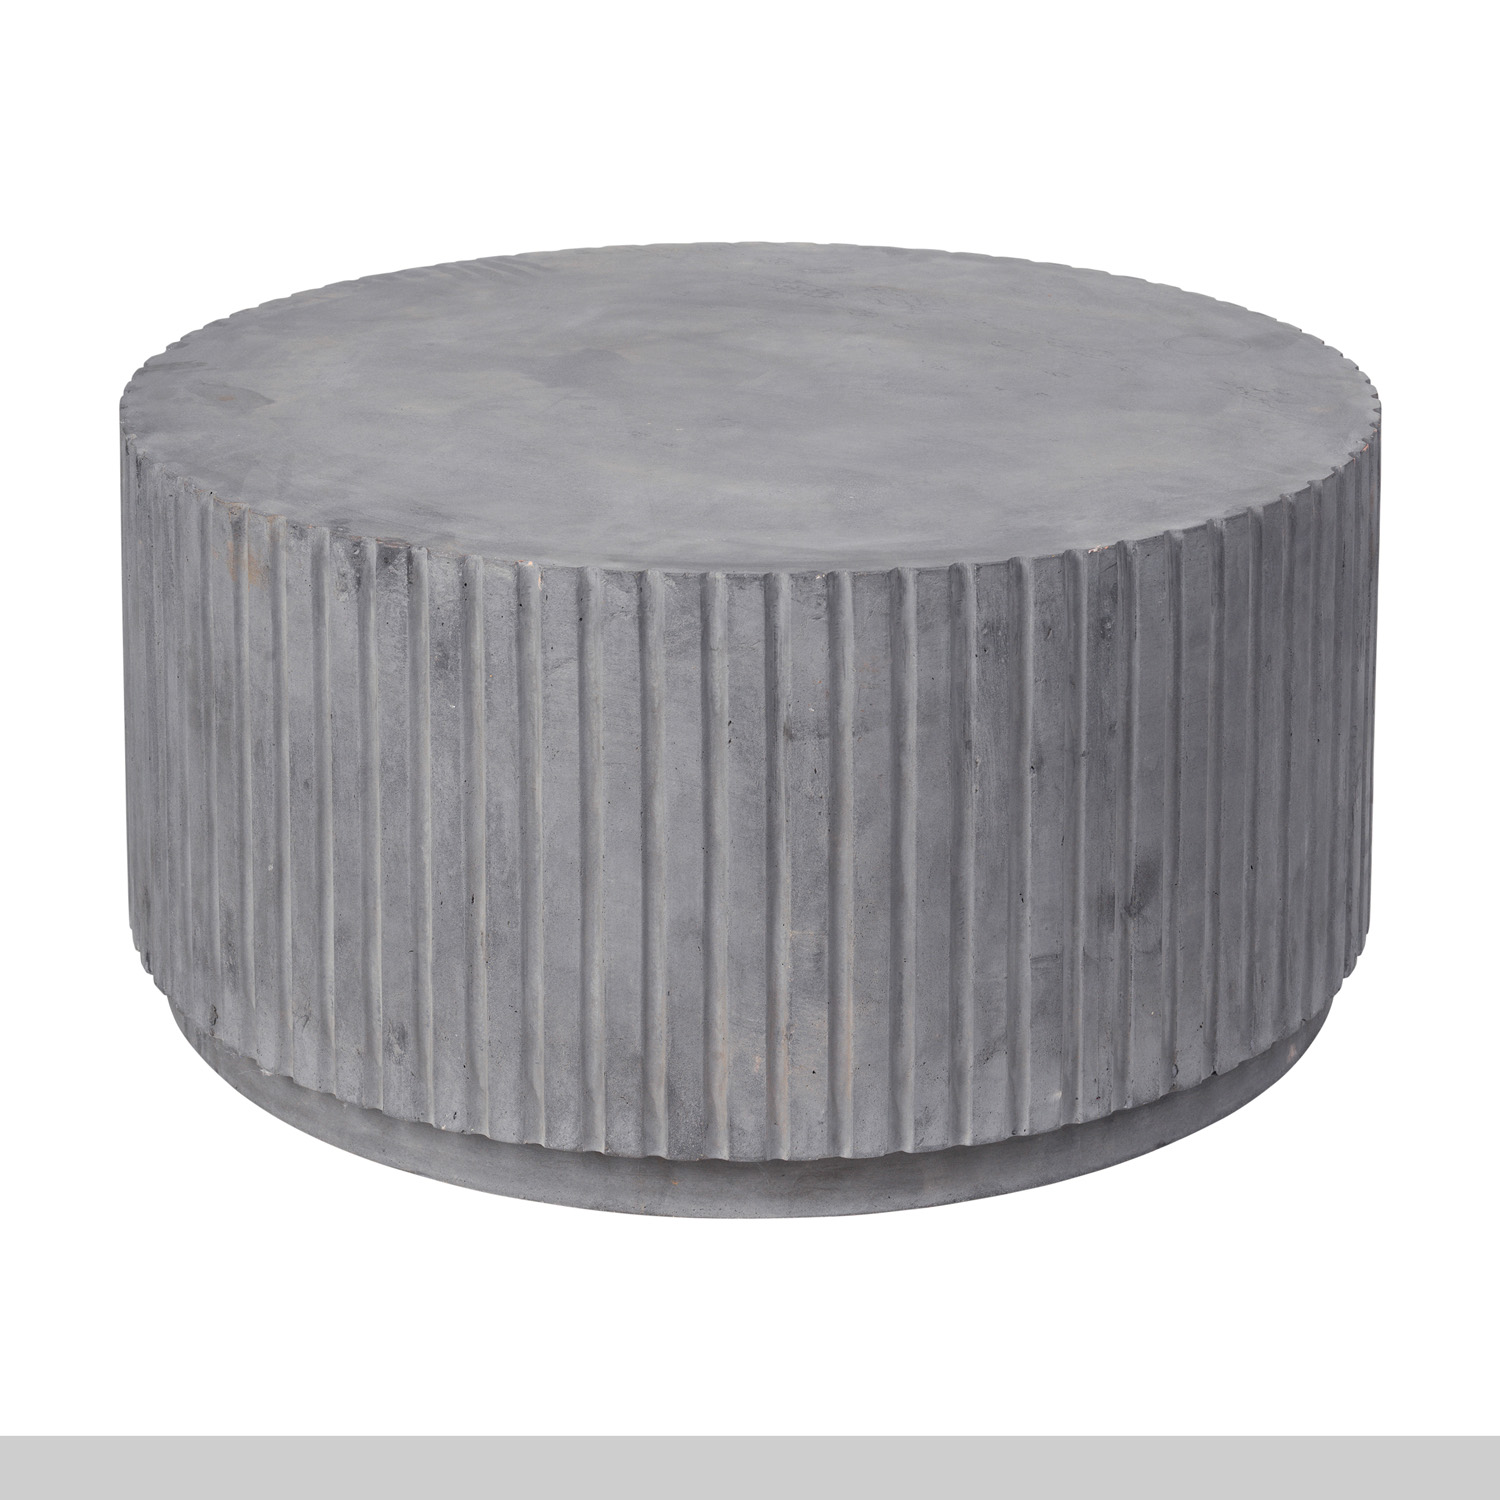 5: BROSTE COPENHAGEN Rillo sofabord, rund - grå fibercement (Ø75)